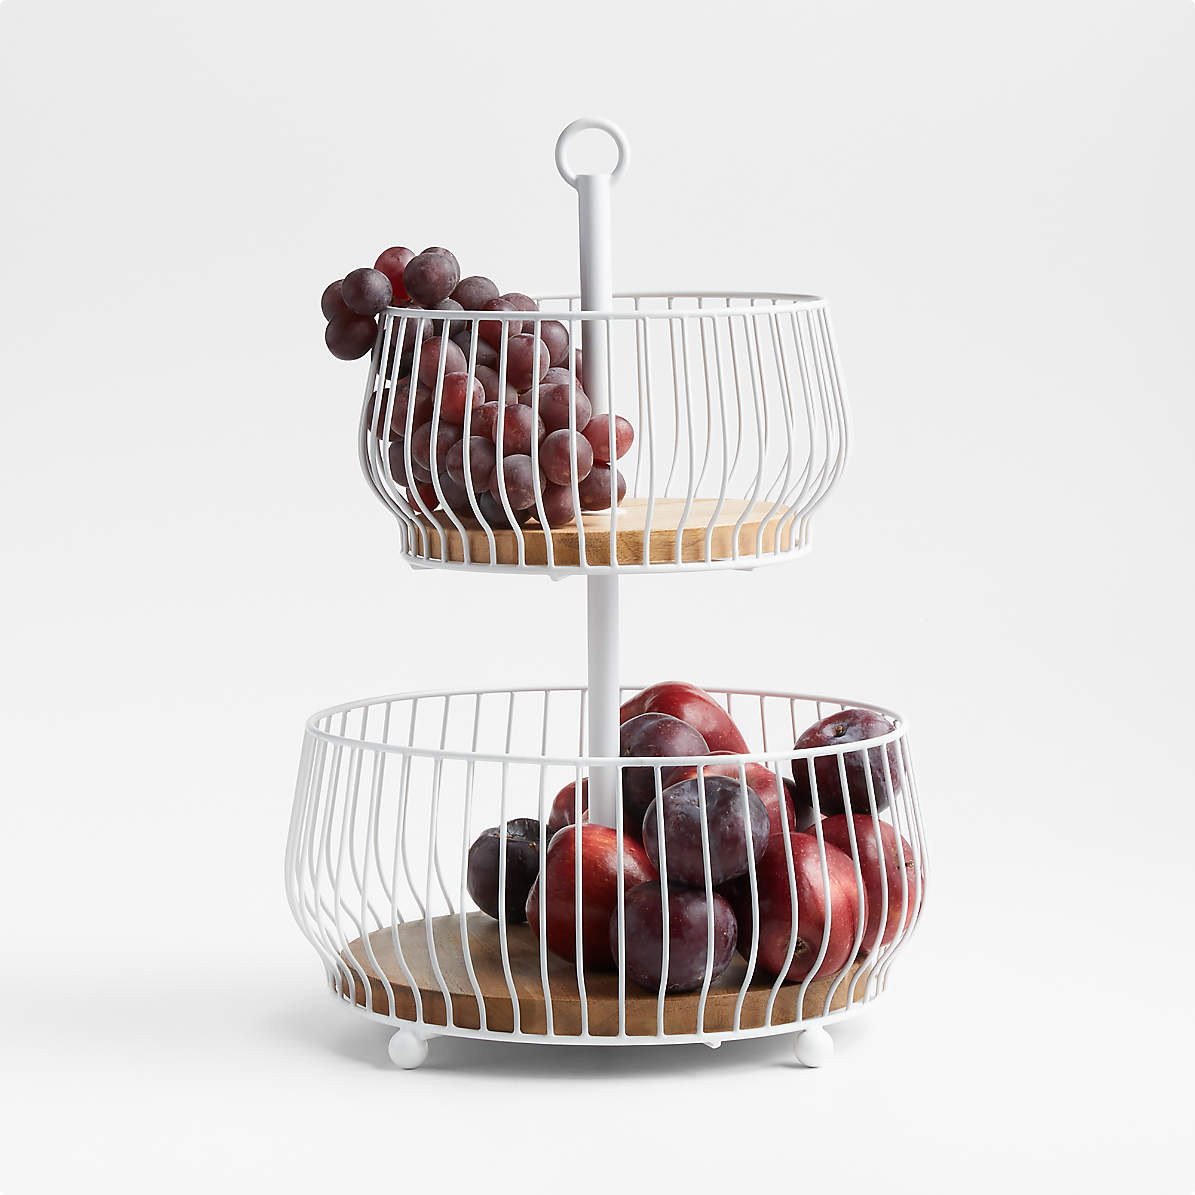 Movable Fruit Basket Kitchen Storage Rack Floor - Temu